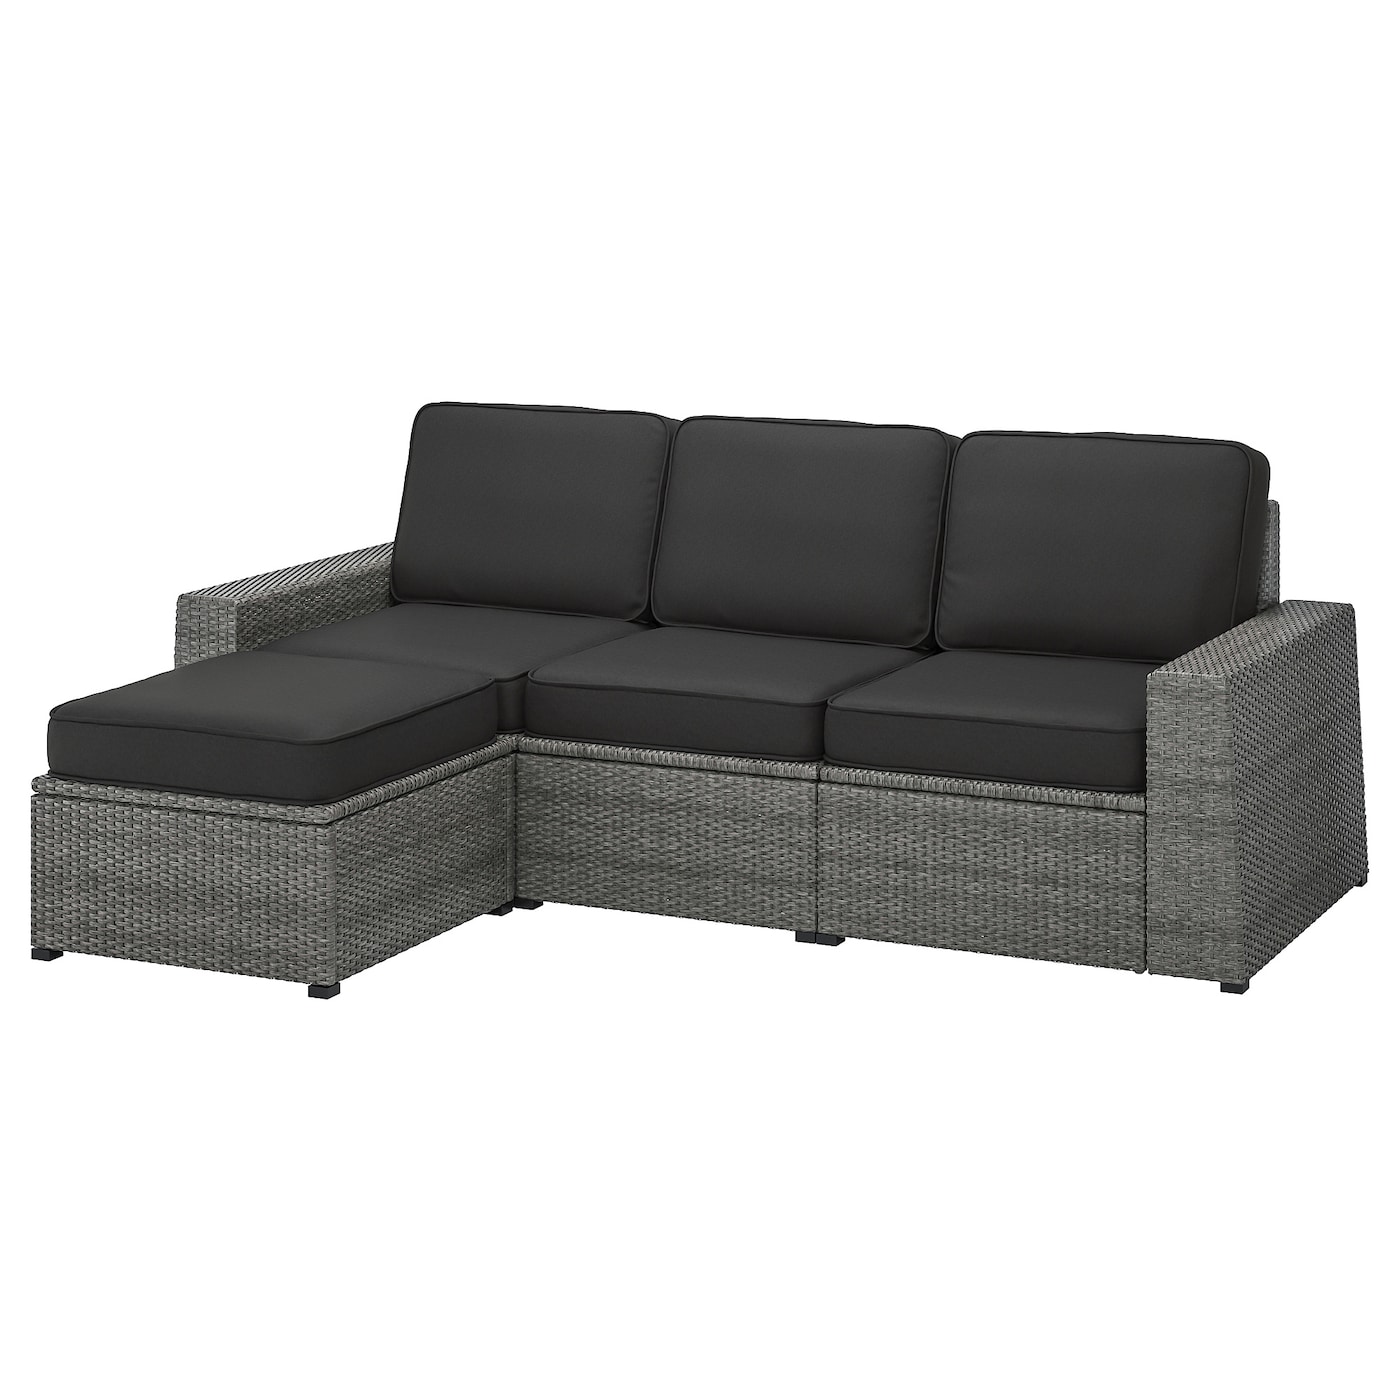 3-местный модульный диван - IKEA SOLLERÖN, 88x144x223см, темно-серый/черный, СОЛЛЕРОН ИКЕА